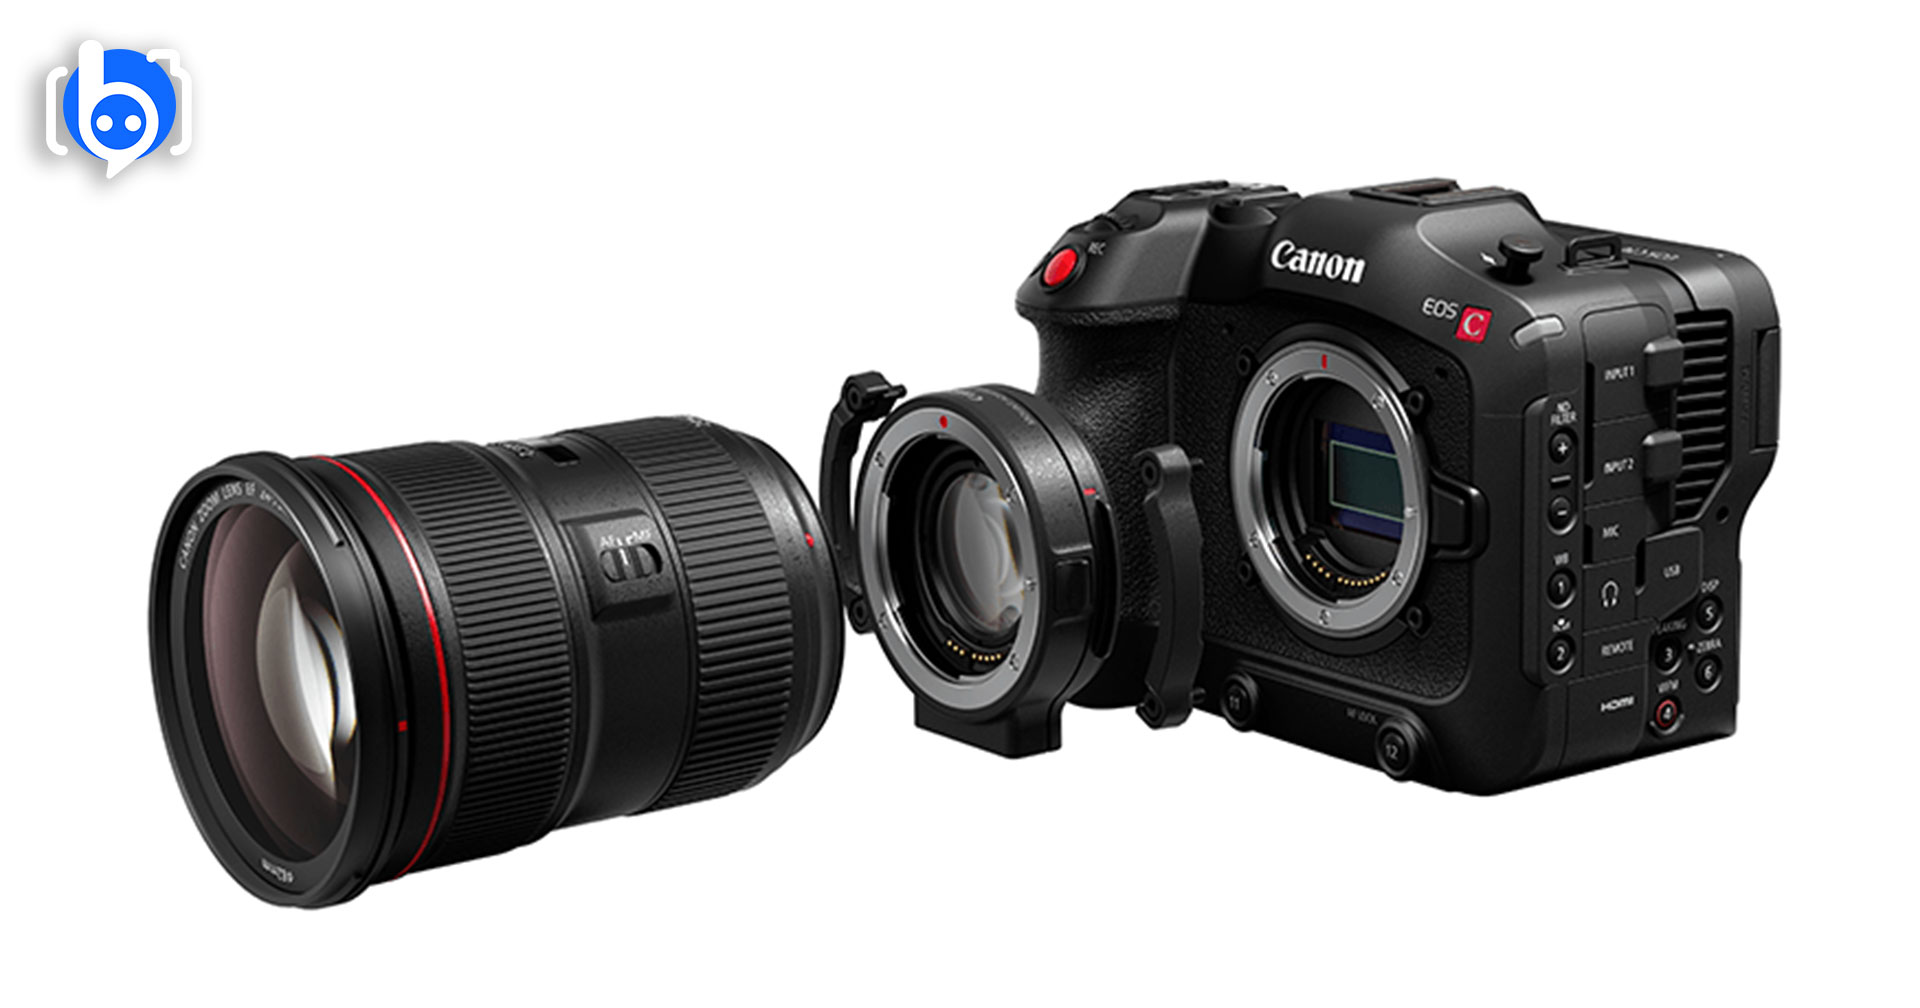 ข่าวลือ Canon เตรียมเปิดตัวกล้อง Cinema EOS อีกสองรุ่น ภายในครึ่งปีนี้